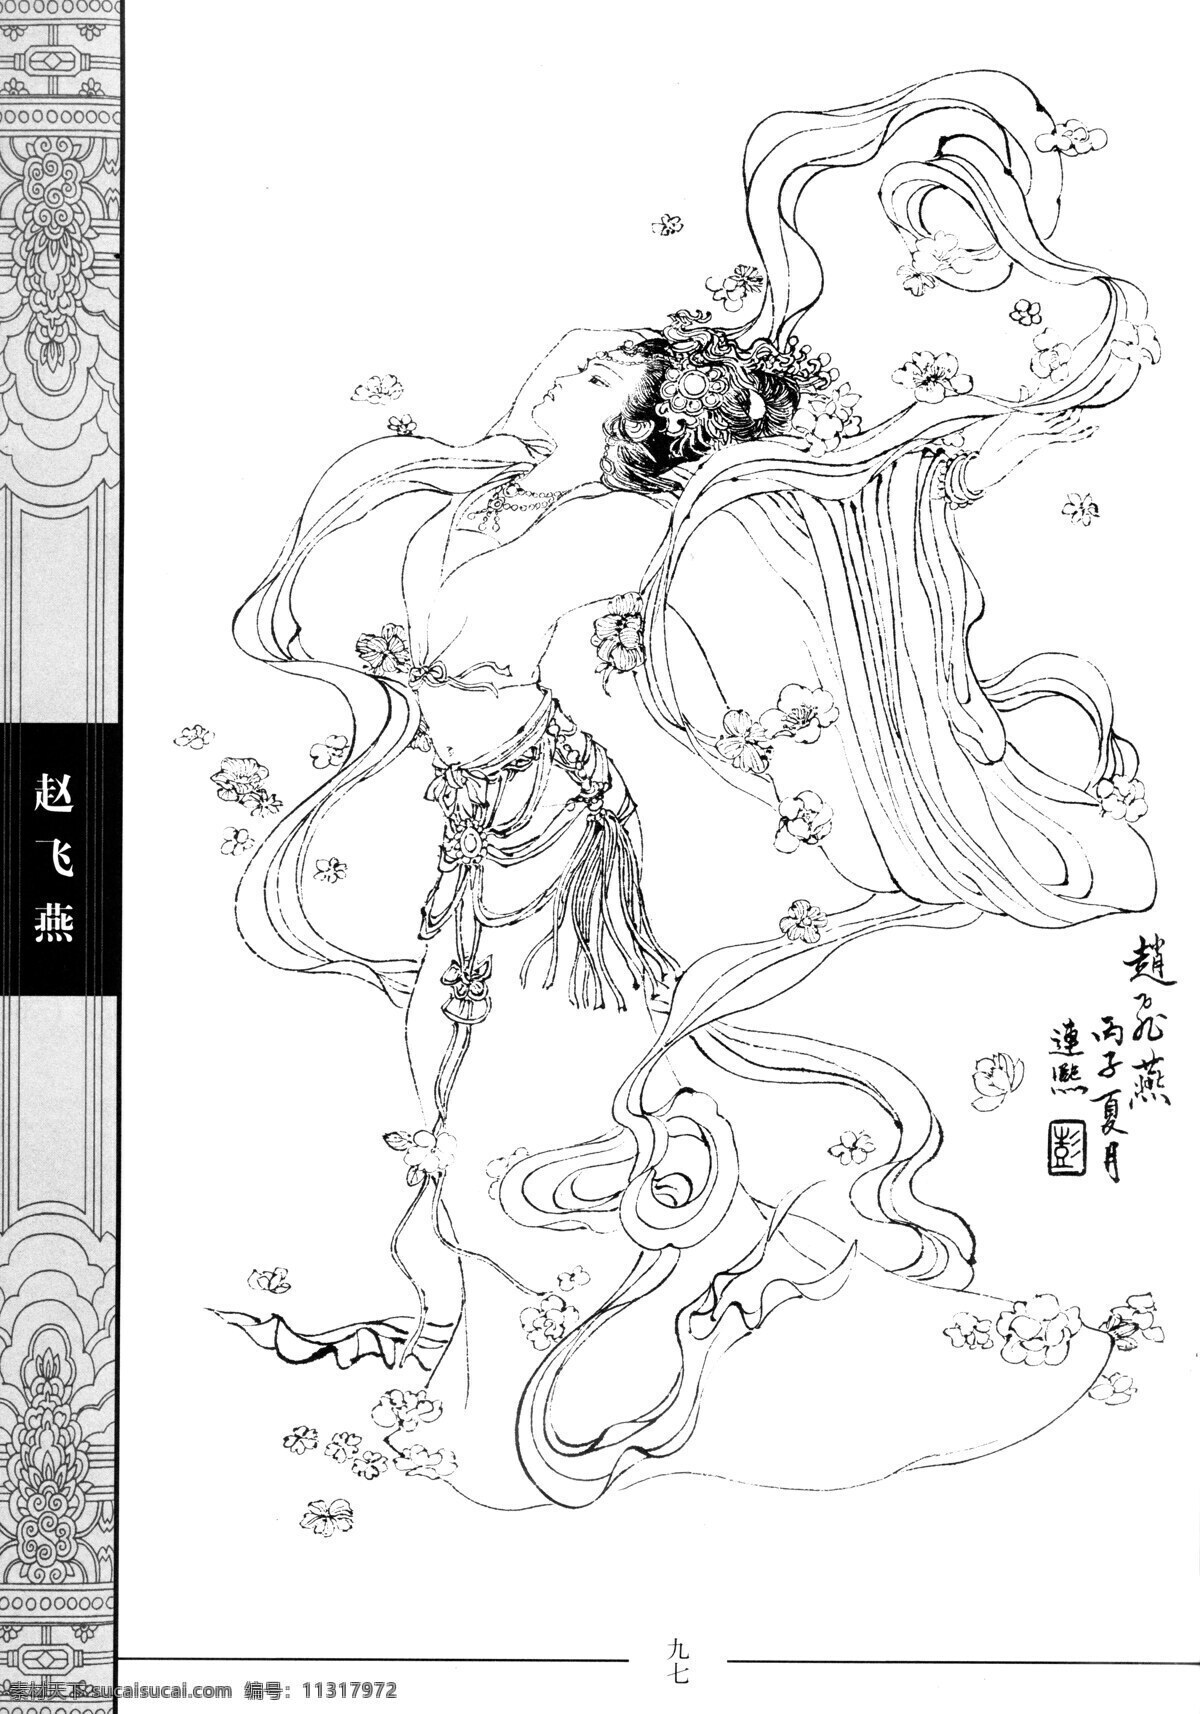 中国仕女百图 赵飞燕 仕女 彭连熙 线描 扫描 绘画书法 文化艺术